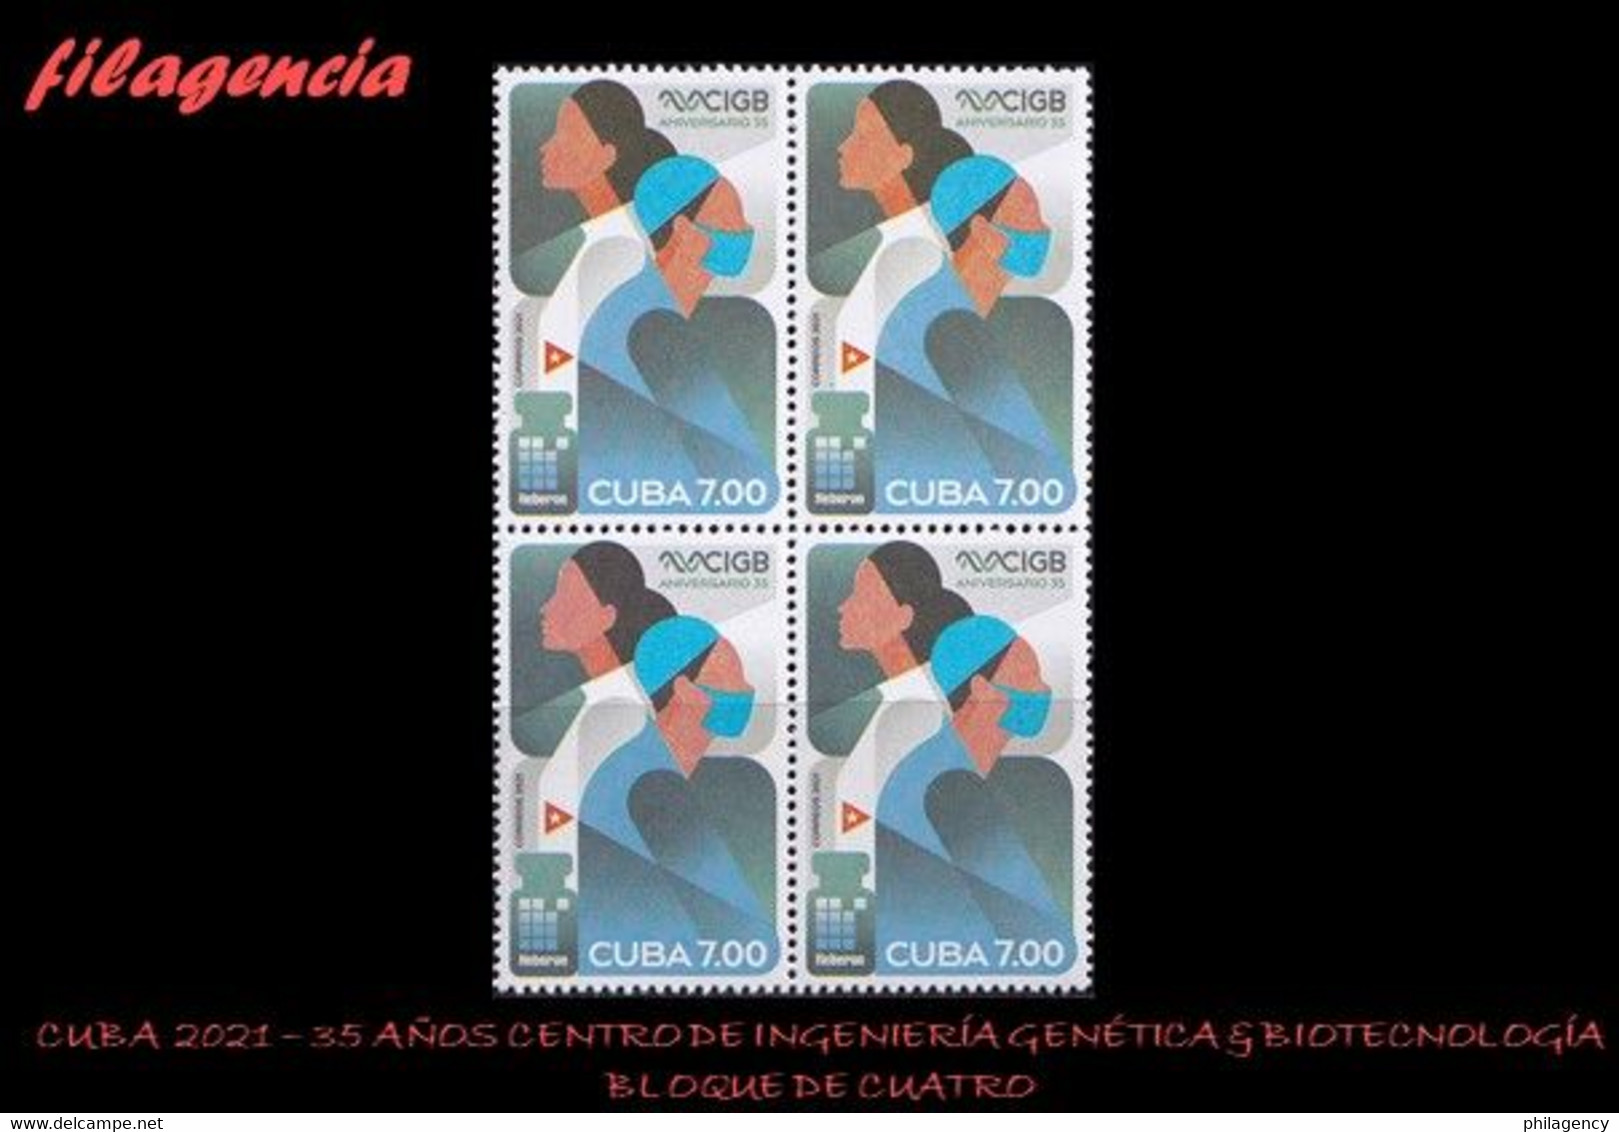 CUBA. BLOQUES DE CUATRO. 2021-10 35 AÑOS DEL CENTRO DE INGENIERÍA GENÉTICA & BIOTECNOLOGÍA - Unused Stamps